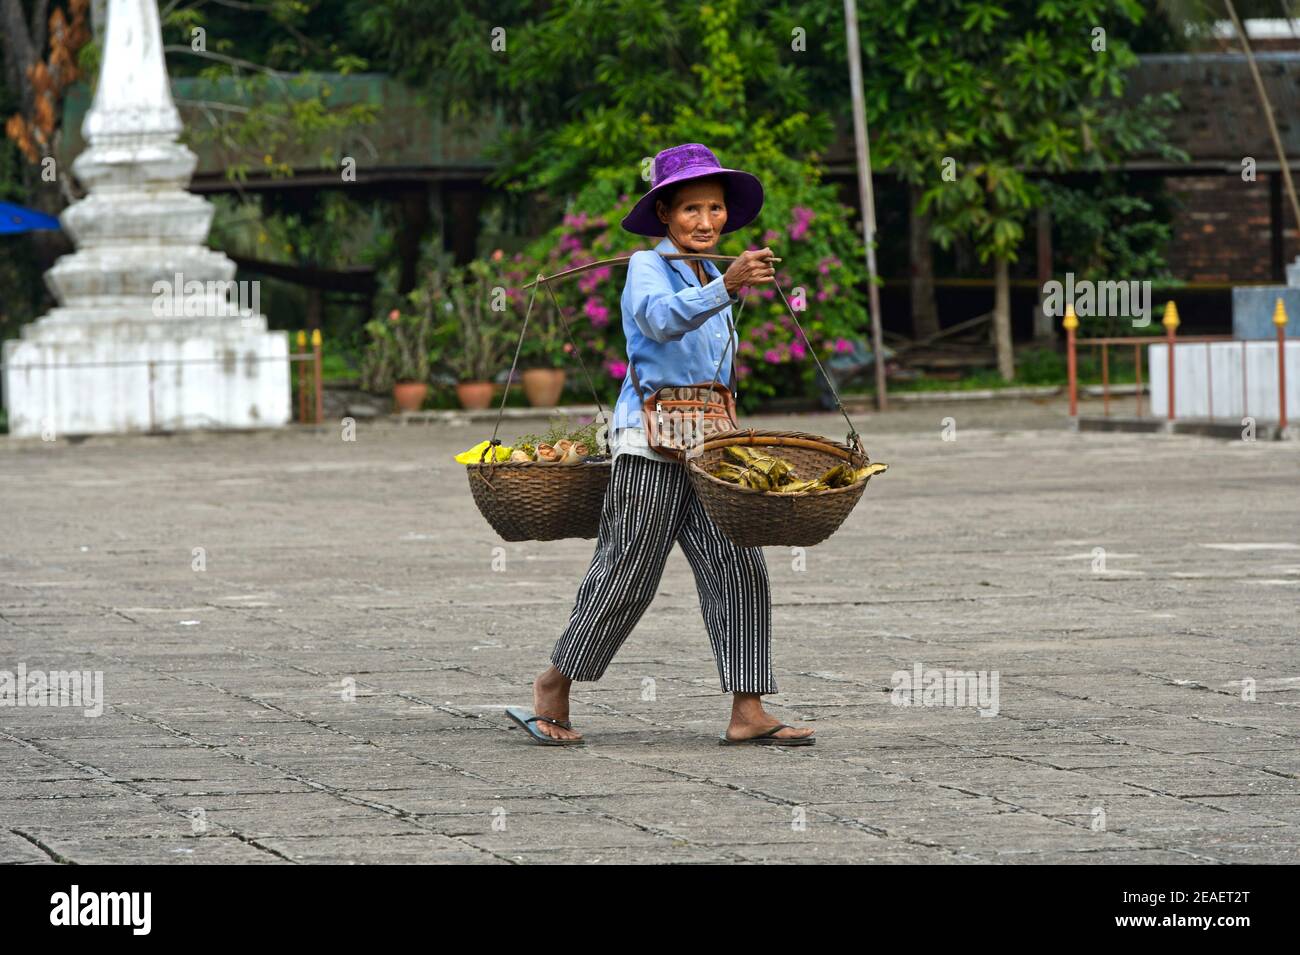 Femme laotienne avec des paniers sur son épaule revenant de shopping dans le marché vert, Luang Prabang, Laos Banque D'Images